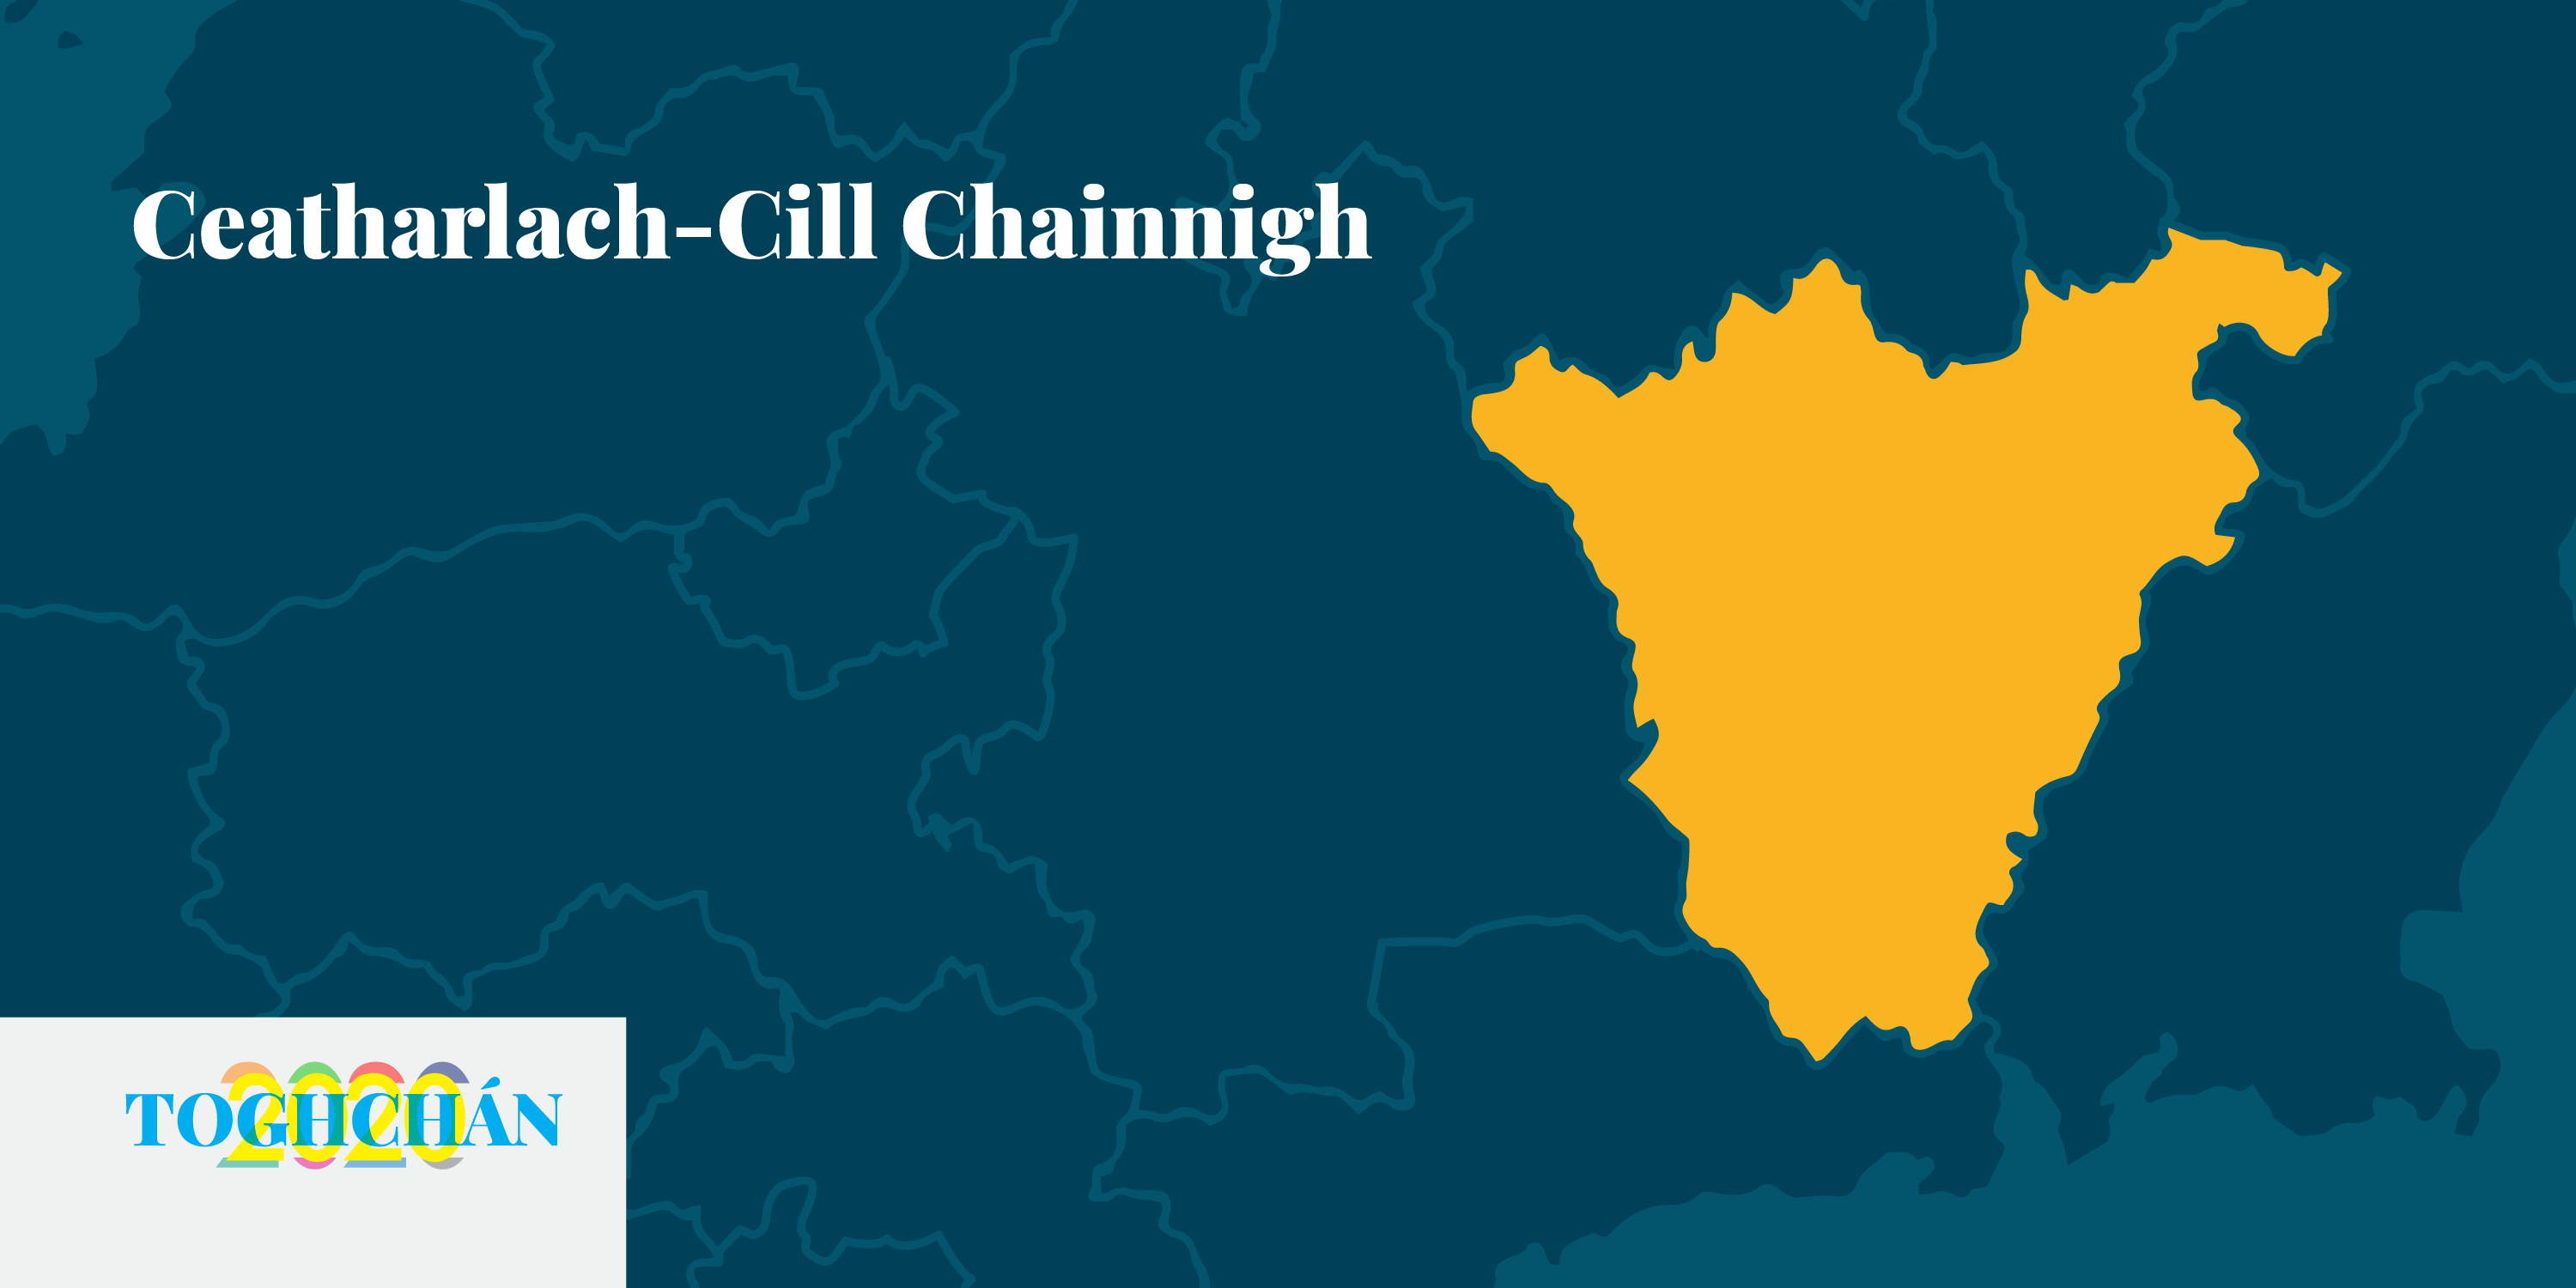 Sinn Féin is mó atá i mbaol i gCeatharlach-Cill Chainnigh